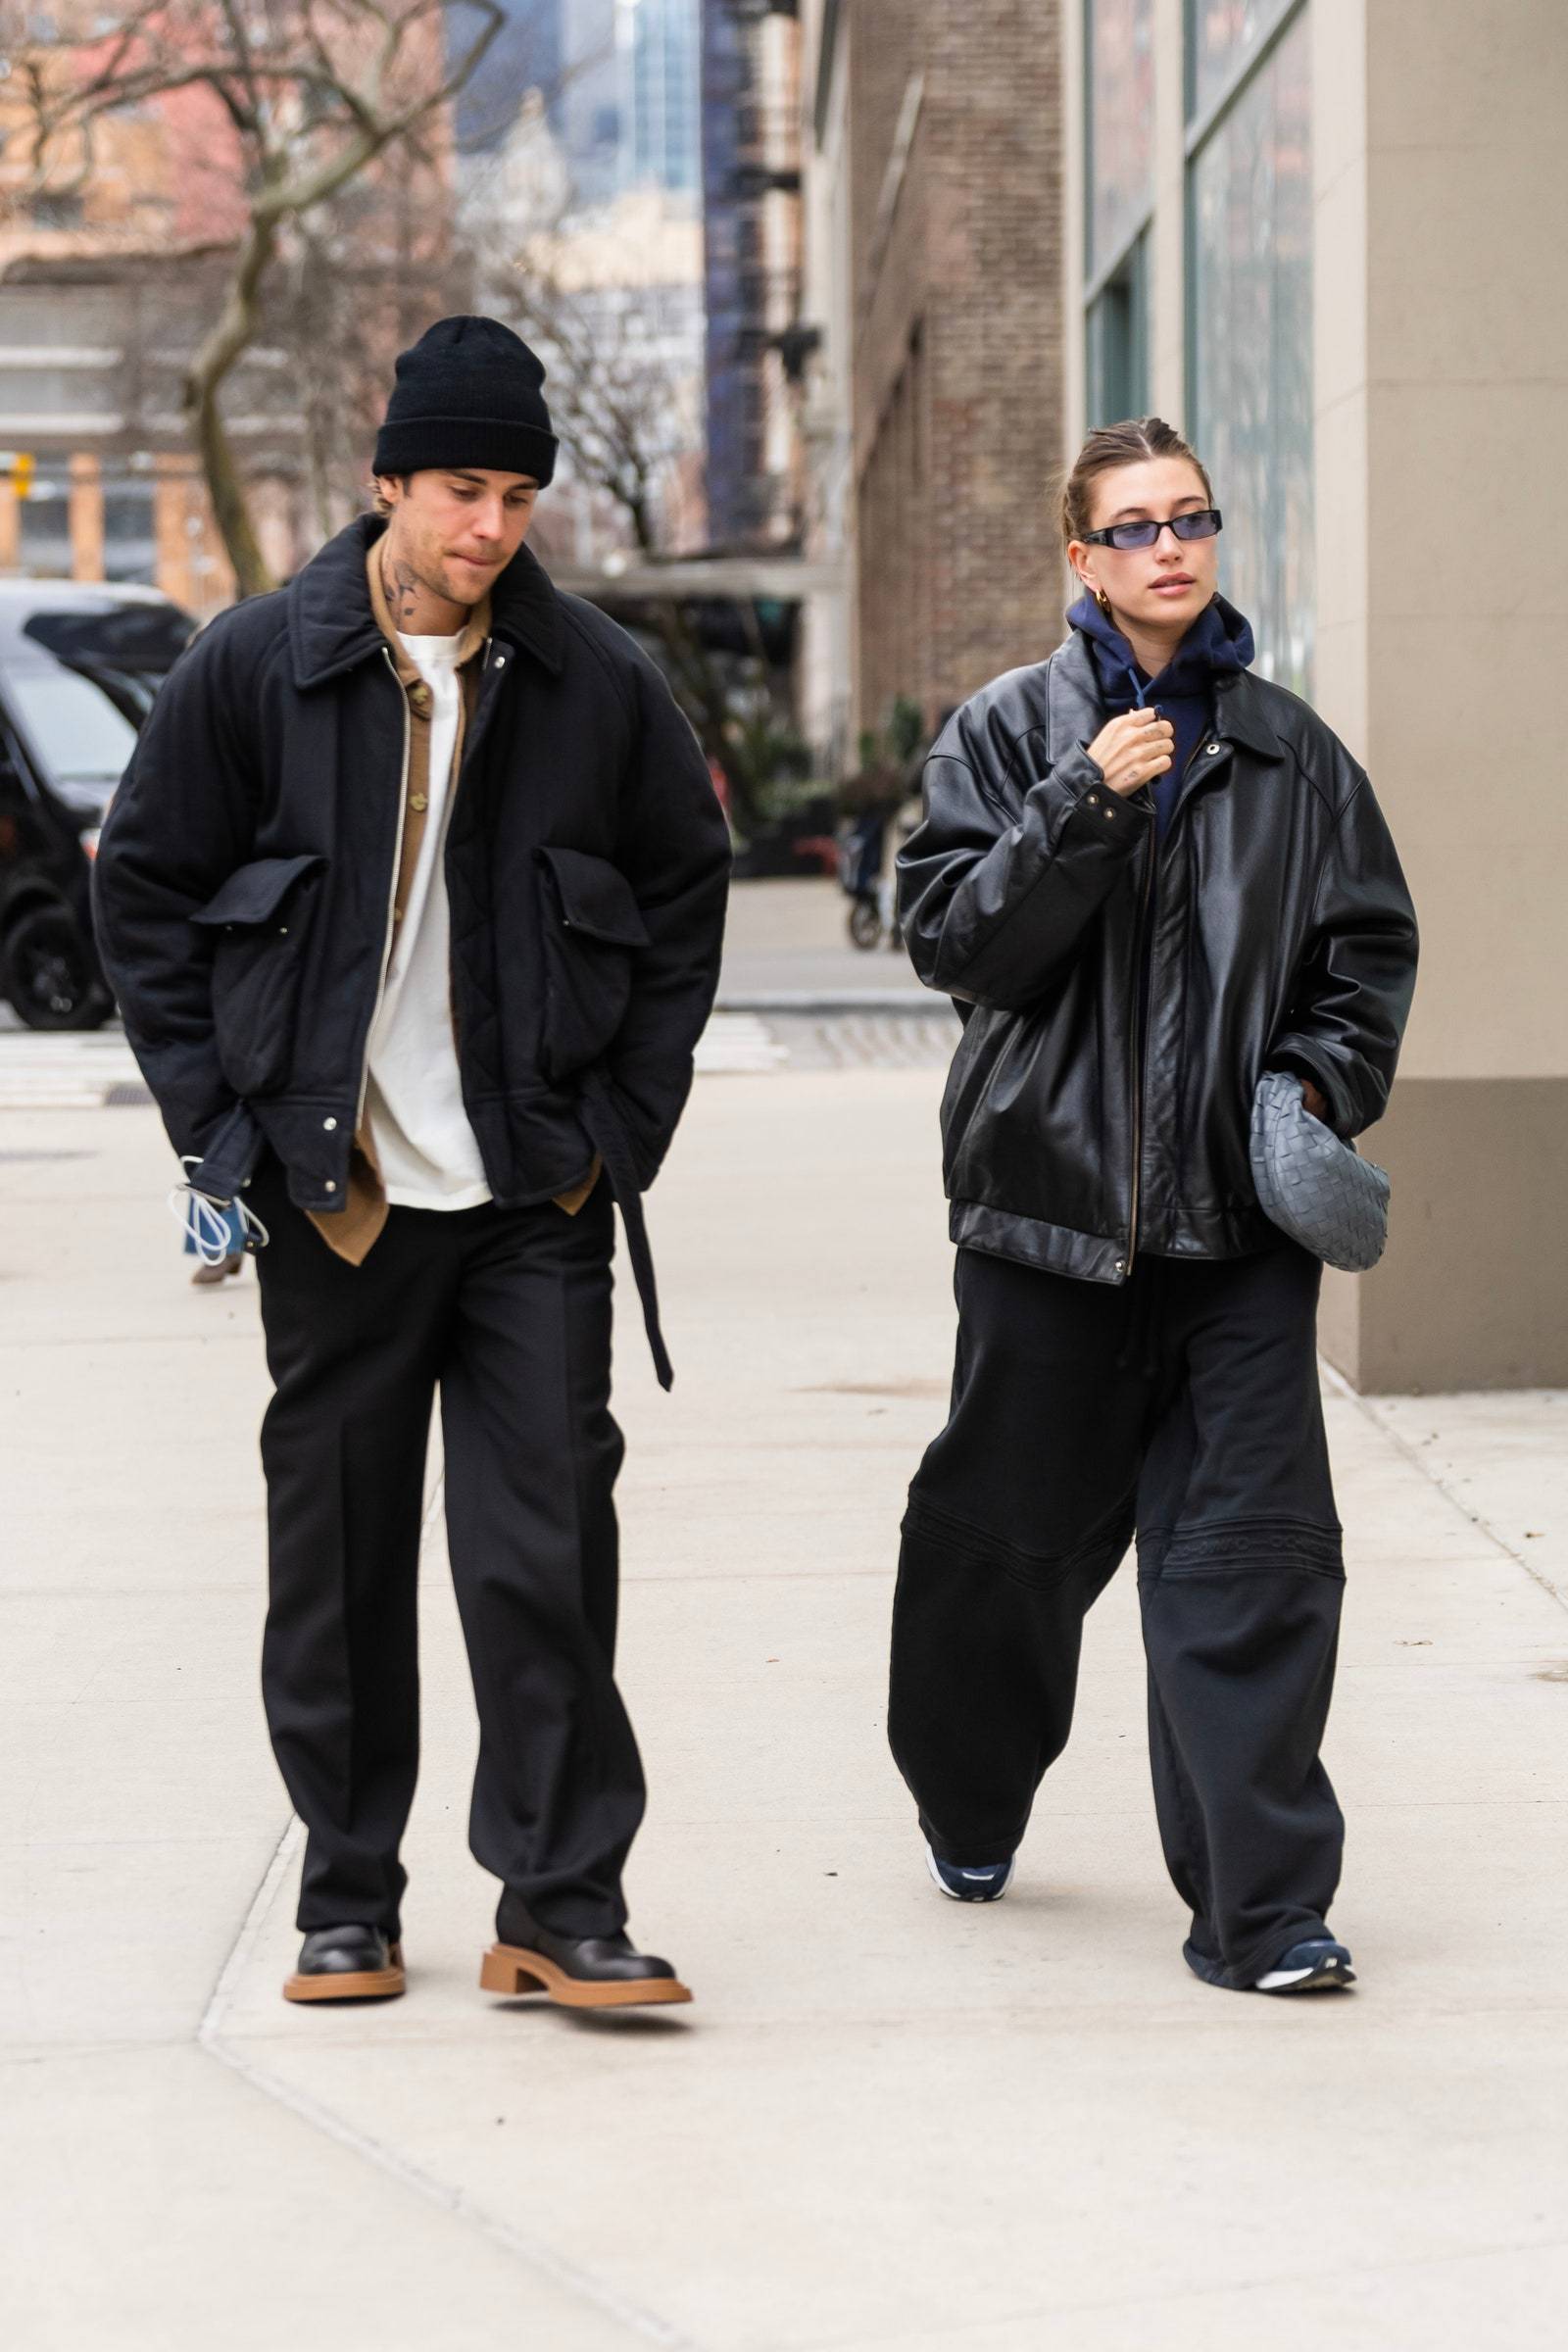 25 stycznia 2023 roku. W workowatych spodniach i oversize’owych kurtkach. Tej parze nigdy nie znudzą się przeskalowane fasony, zwłaszcza te w czerni. (Fot. Getty Images)